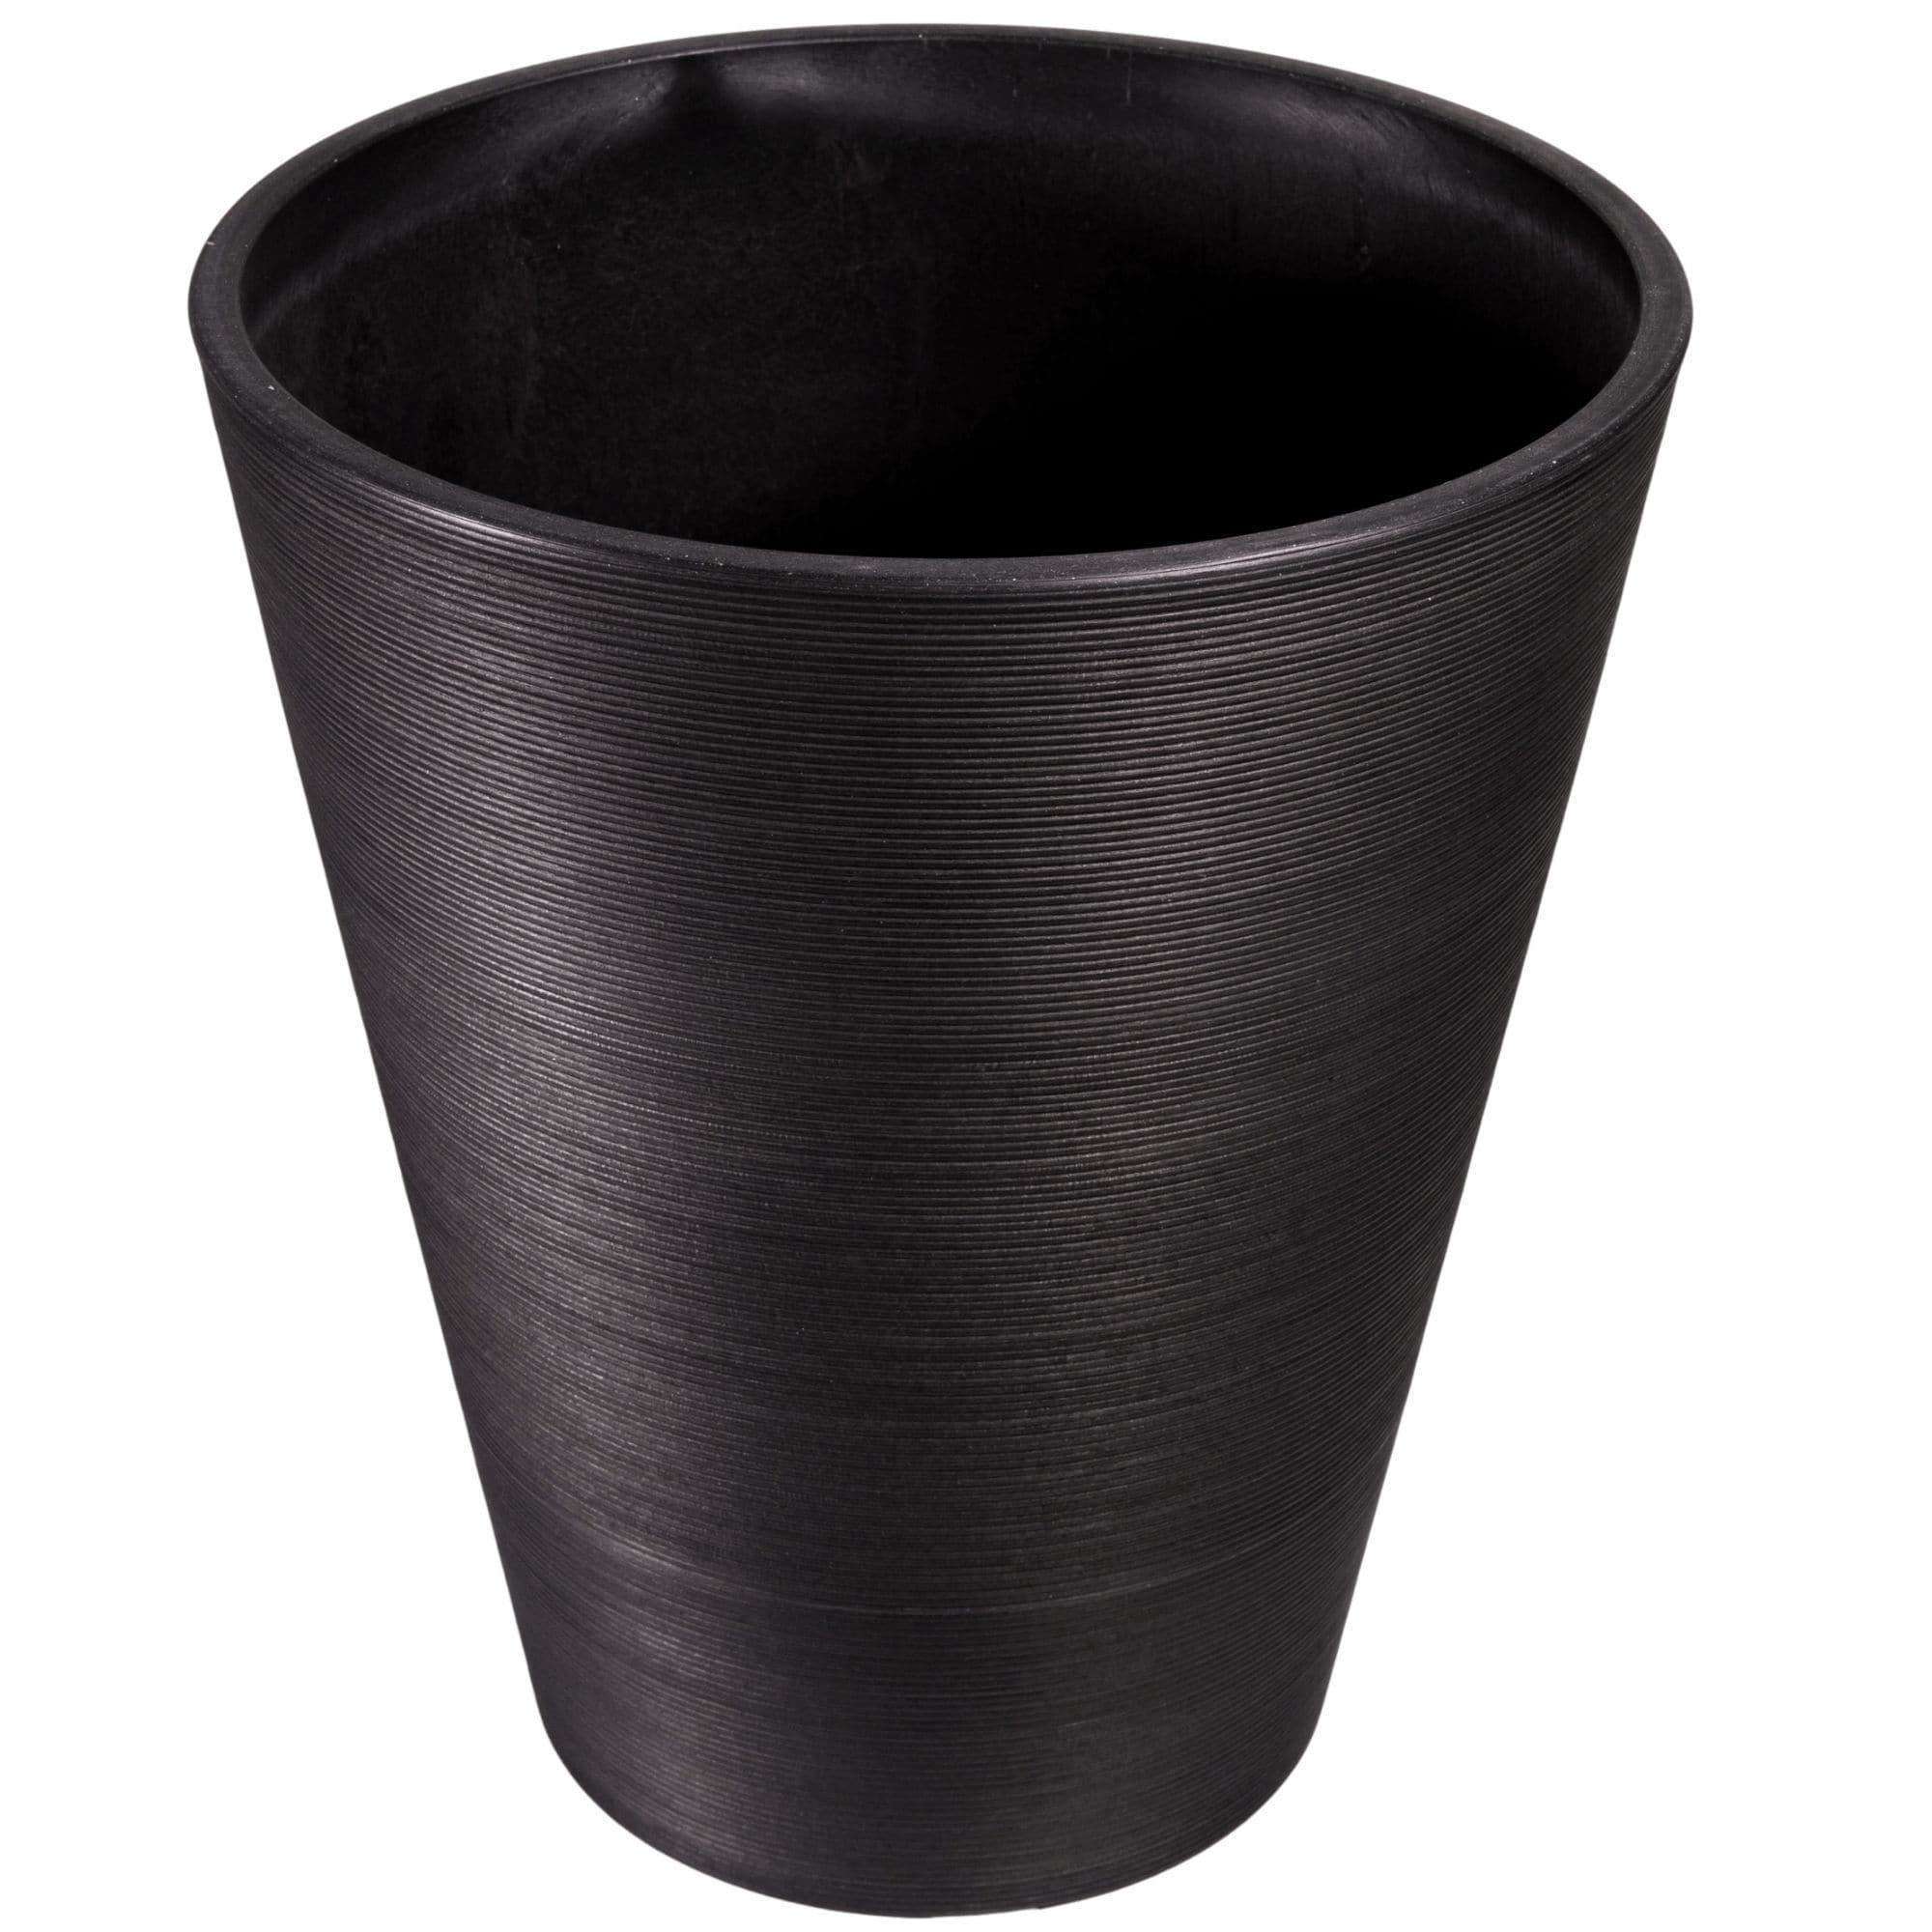 decorative-textured-round-black-planter-47cm-498236.jpg